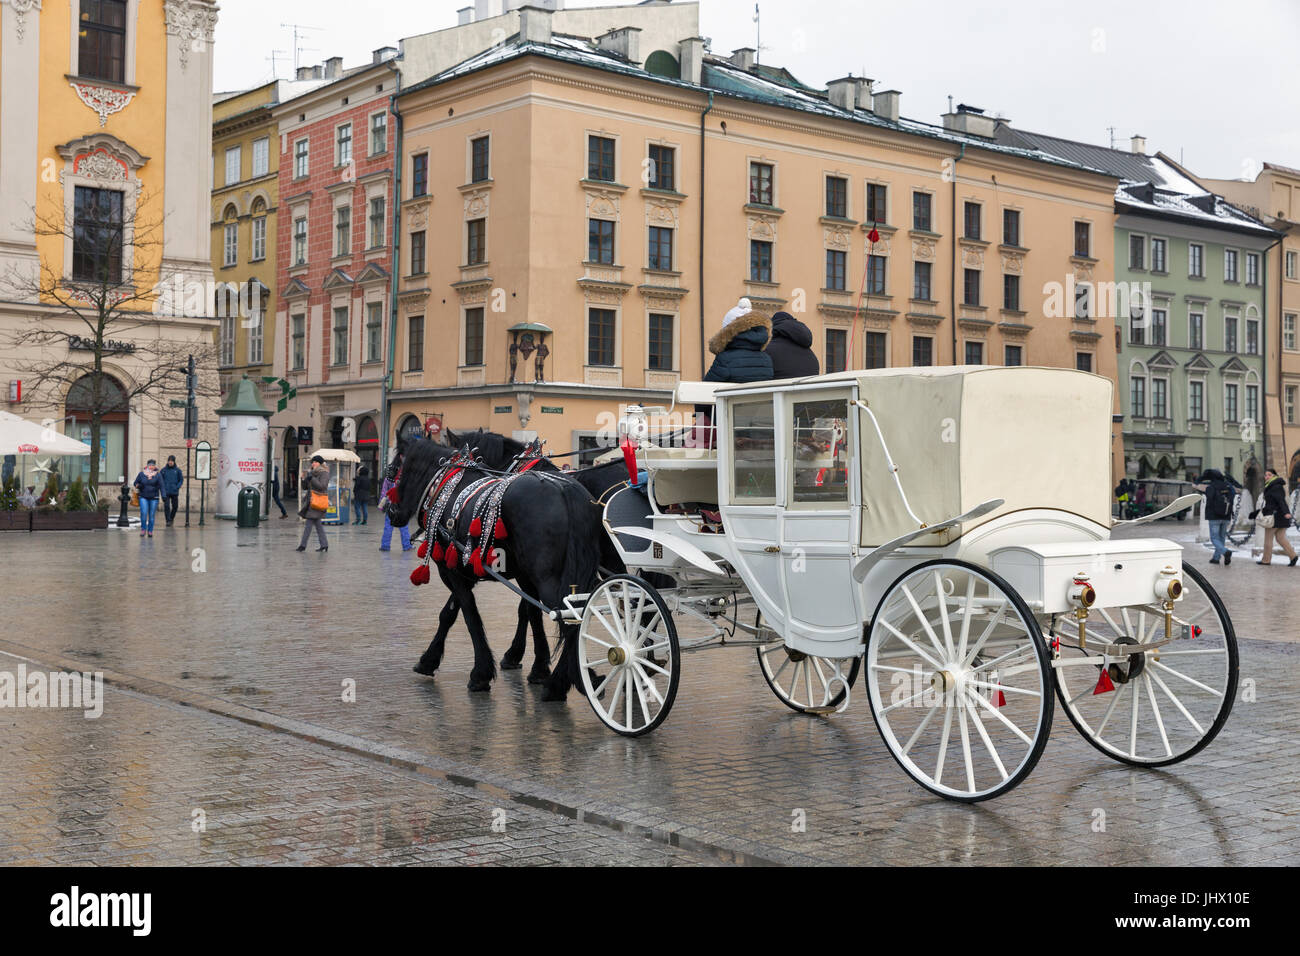 Cracovia in Polonia - 12 gennaio 2017: la gente non riconosciuto a piedi lungo il cavallo bianco carrello sulla piazza principale del mercato nella città vecchia. Cracovia è la seconda più grande Foto Stock